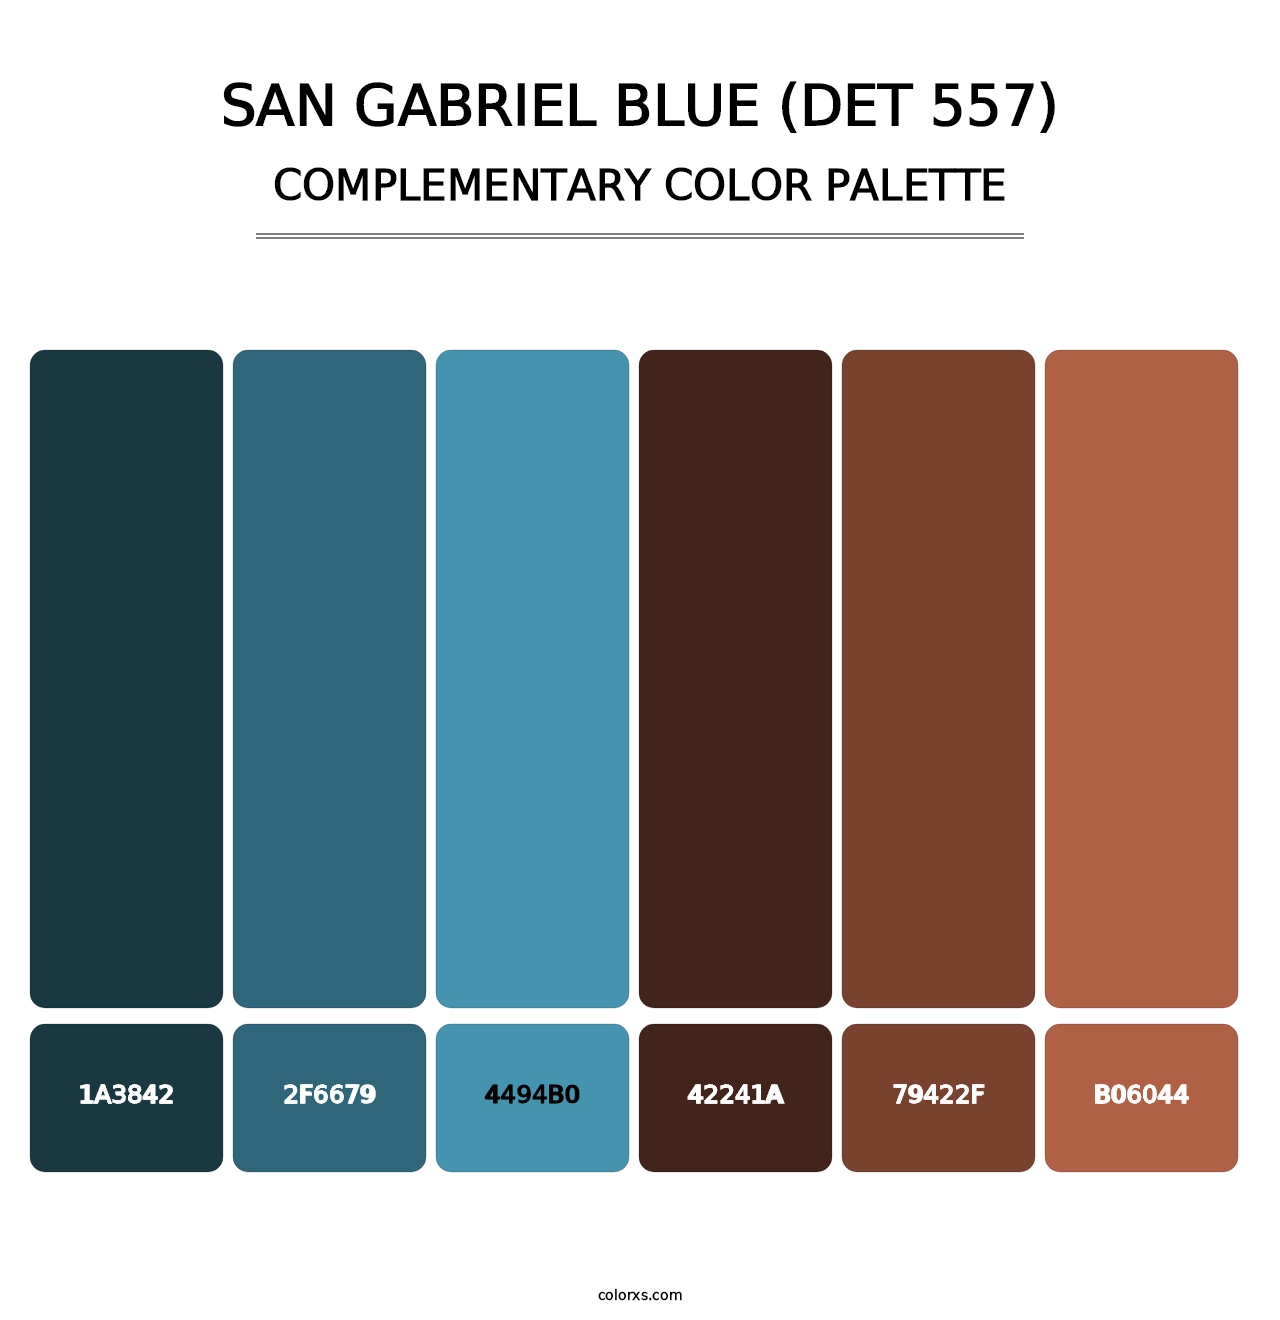 San Gabriel Blue (DET 557) - Complementary Color Palette